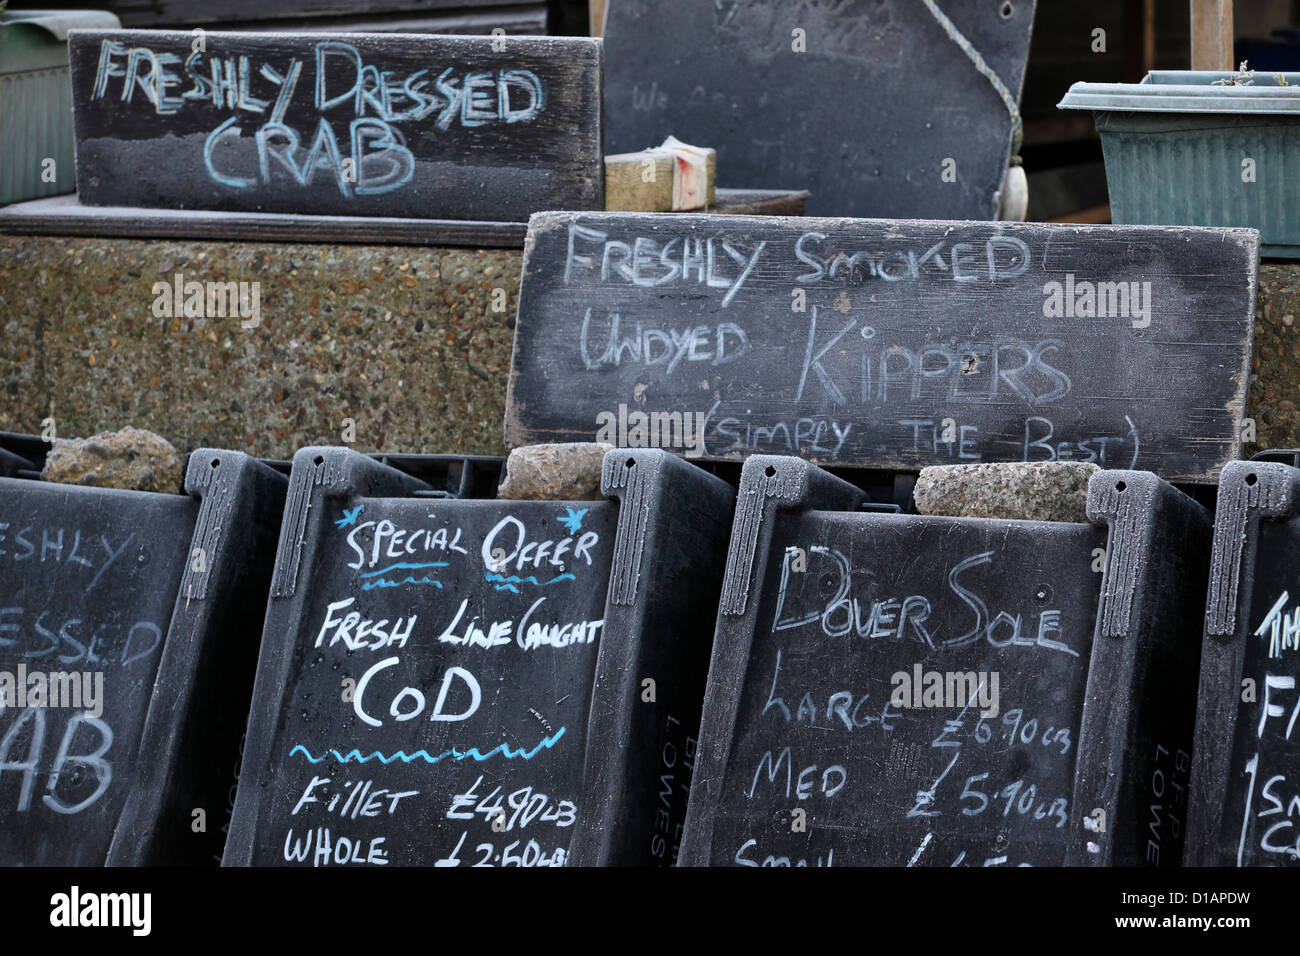 Poisson frais, crabe, habillé pour la vente des tableaux d'affichage à l'extérieur de la cabane à poisson, Aldeburgh, Suffolk, UK Banque D'Images